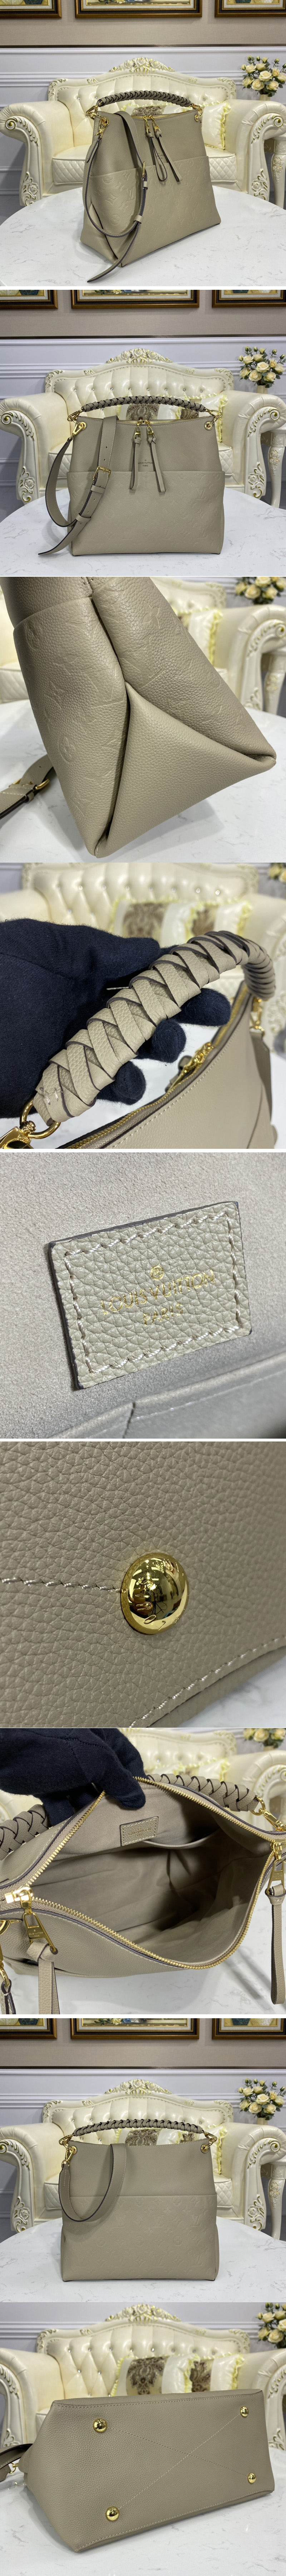 Shop Louis Vuitton Maida Hobo (Sac Maida, M45522, M45523) by